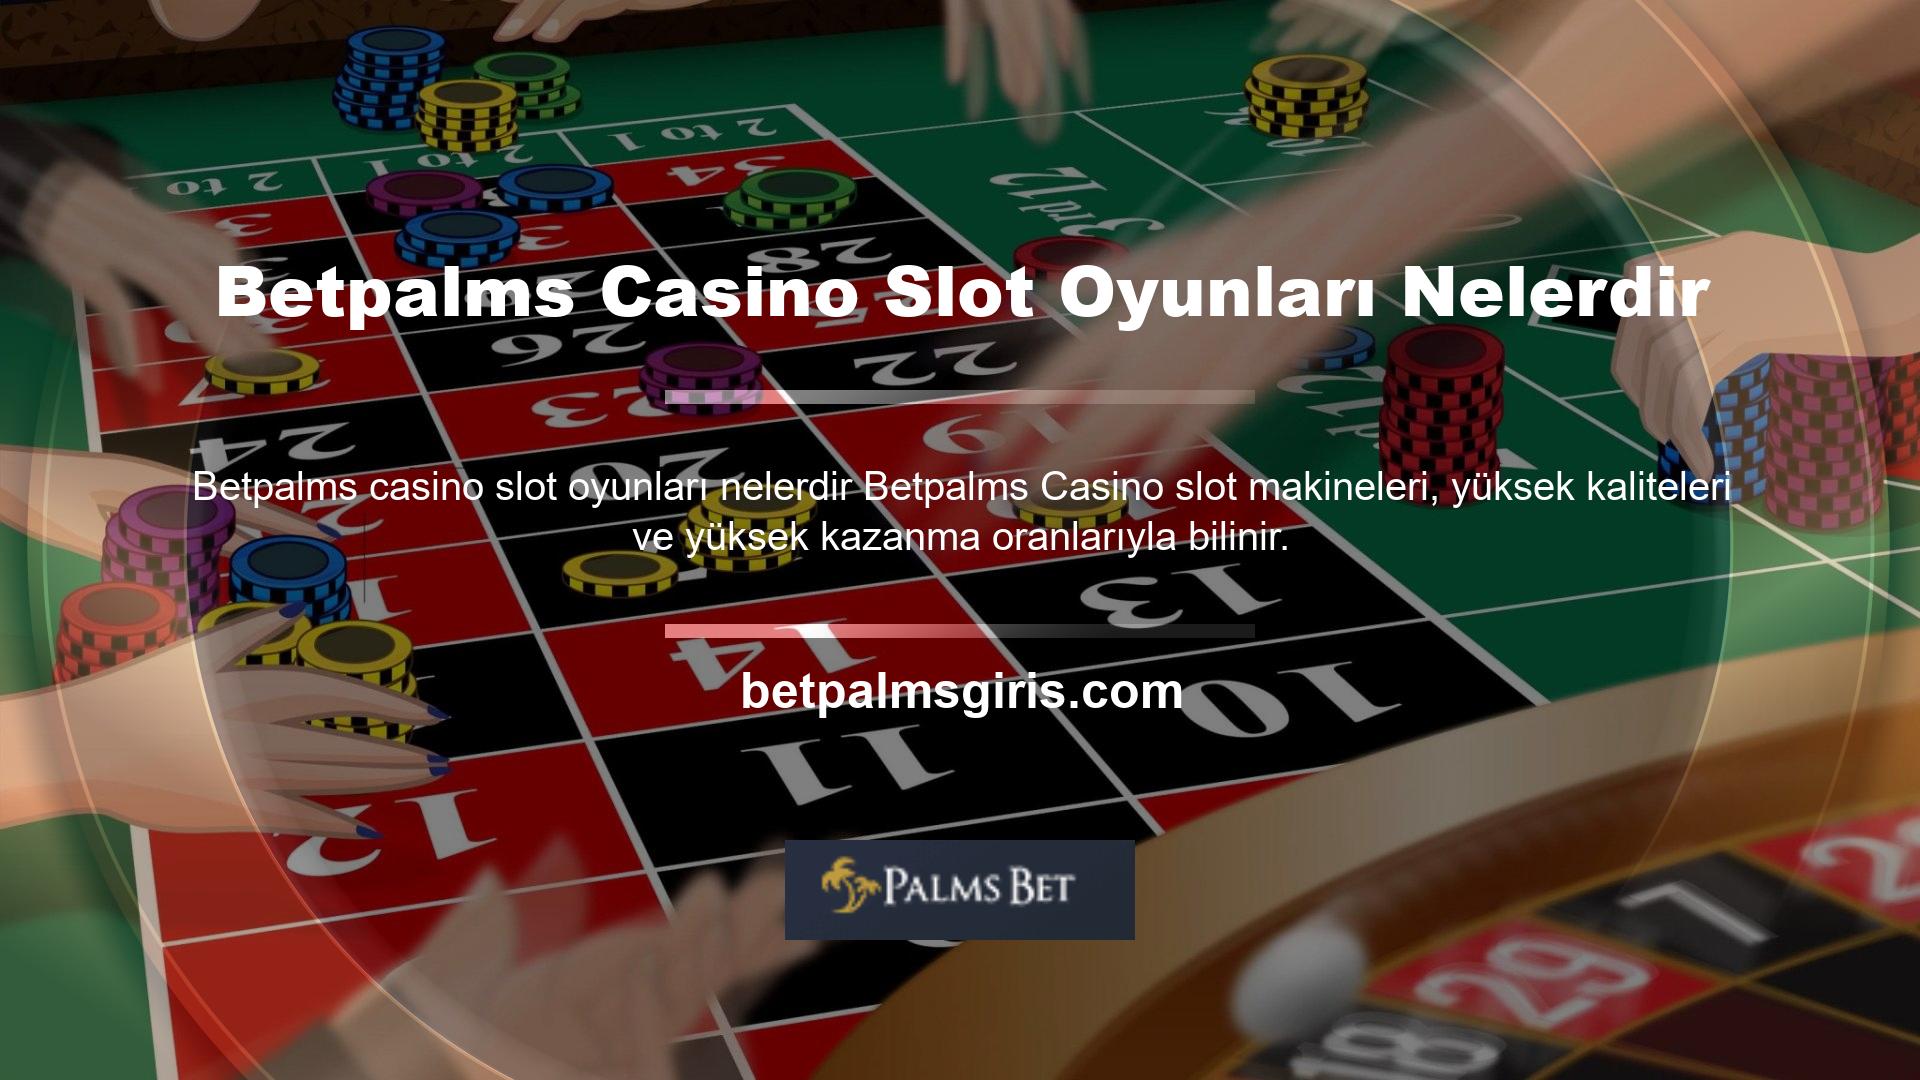 Betpalms Casino'da ne tür slot makineleri mevcut? Slot makinelerinin farklı makara seviyeleri vardır ve bir slot makinesinde ne kadar çok rulet veya rulet seçeneği varsa, kazanma şansı da o kadar düşük olur